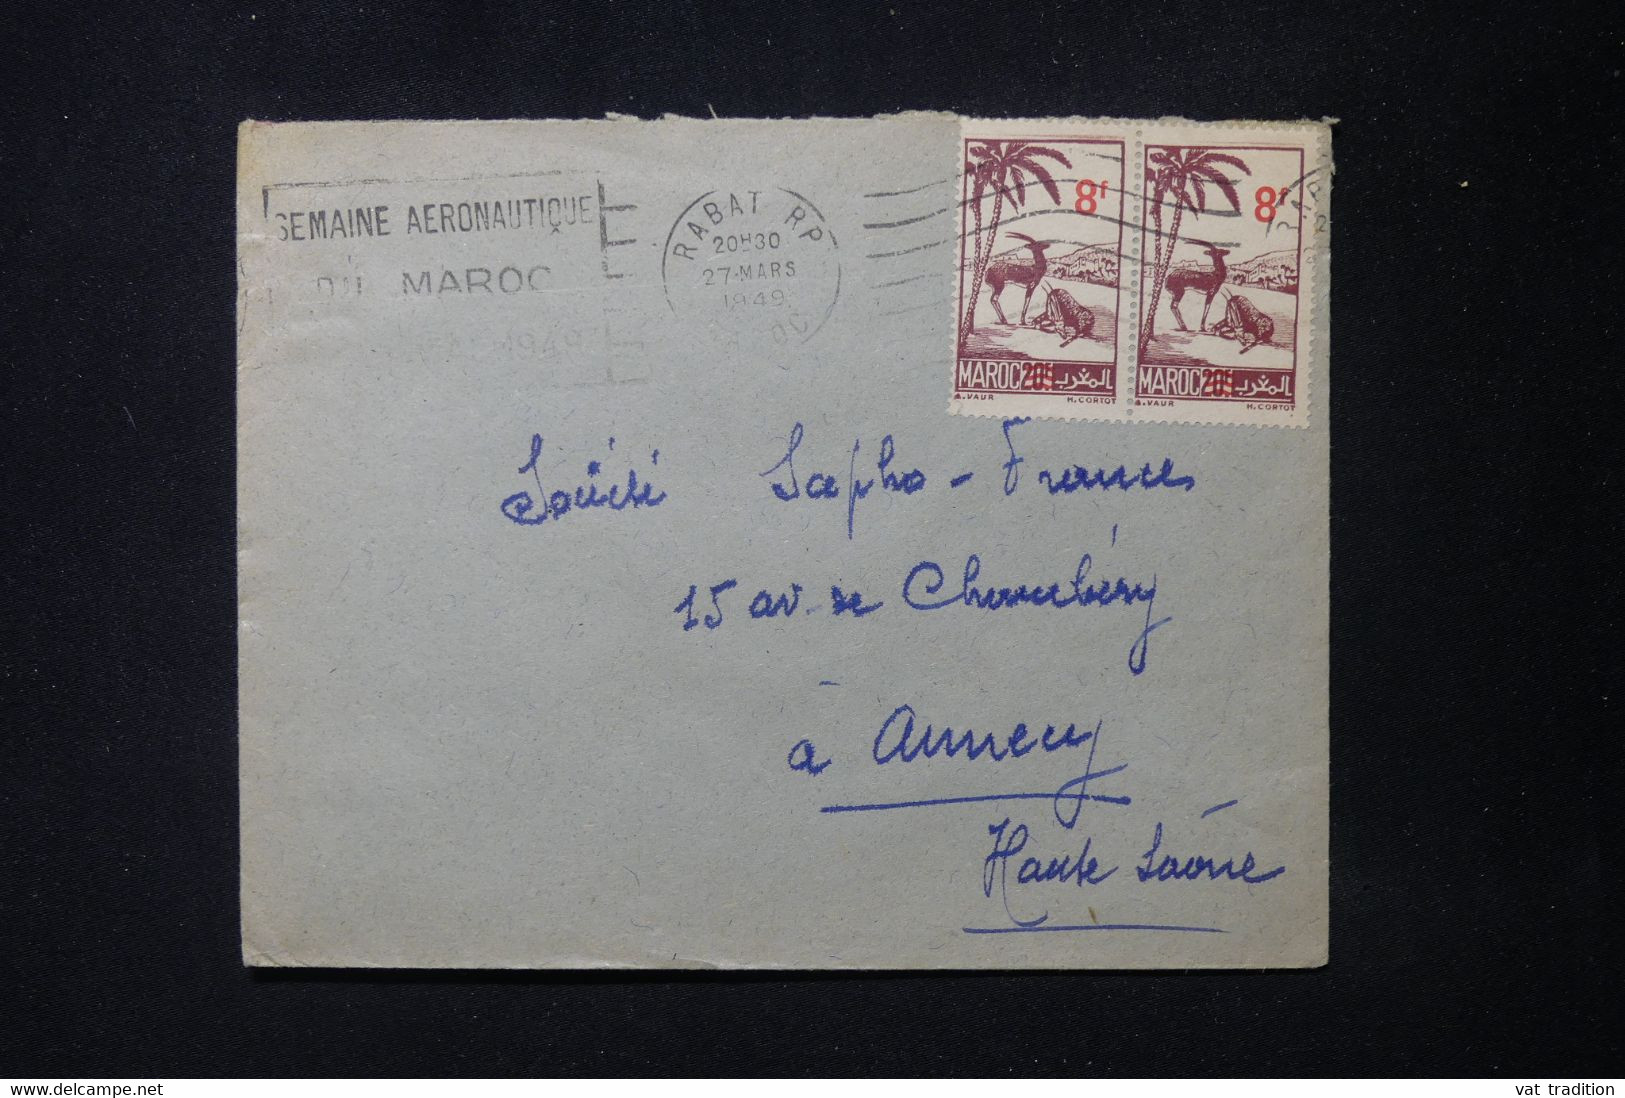 Covers & Documents - MAROC - Enveloppe de Rabat pour Annecy en 1949 - L  88803